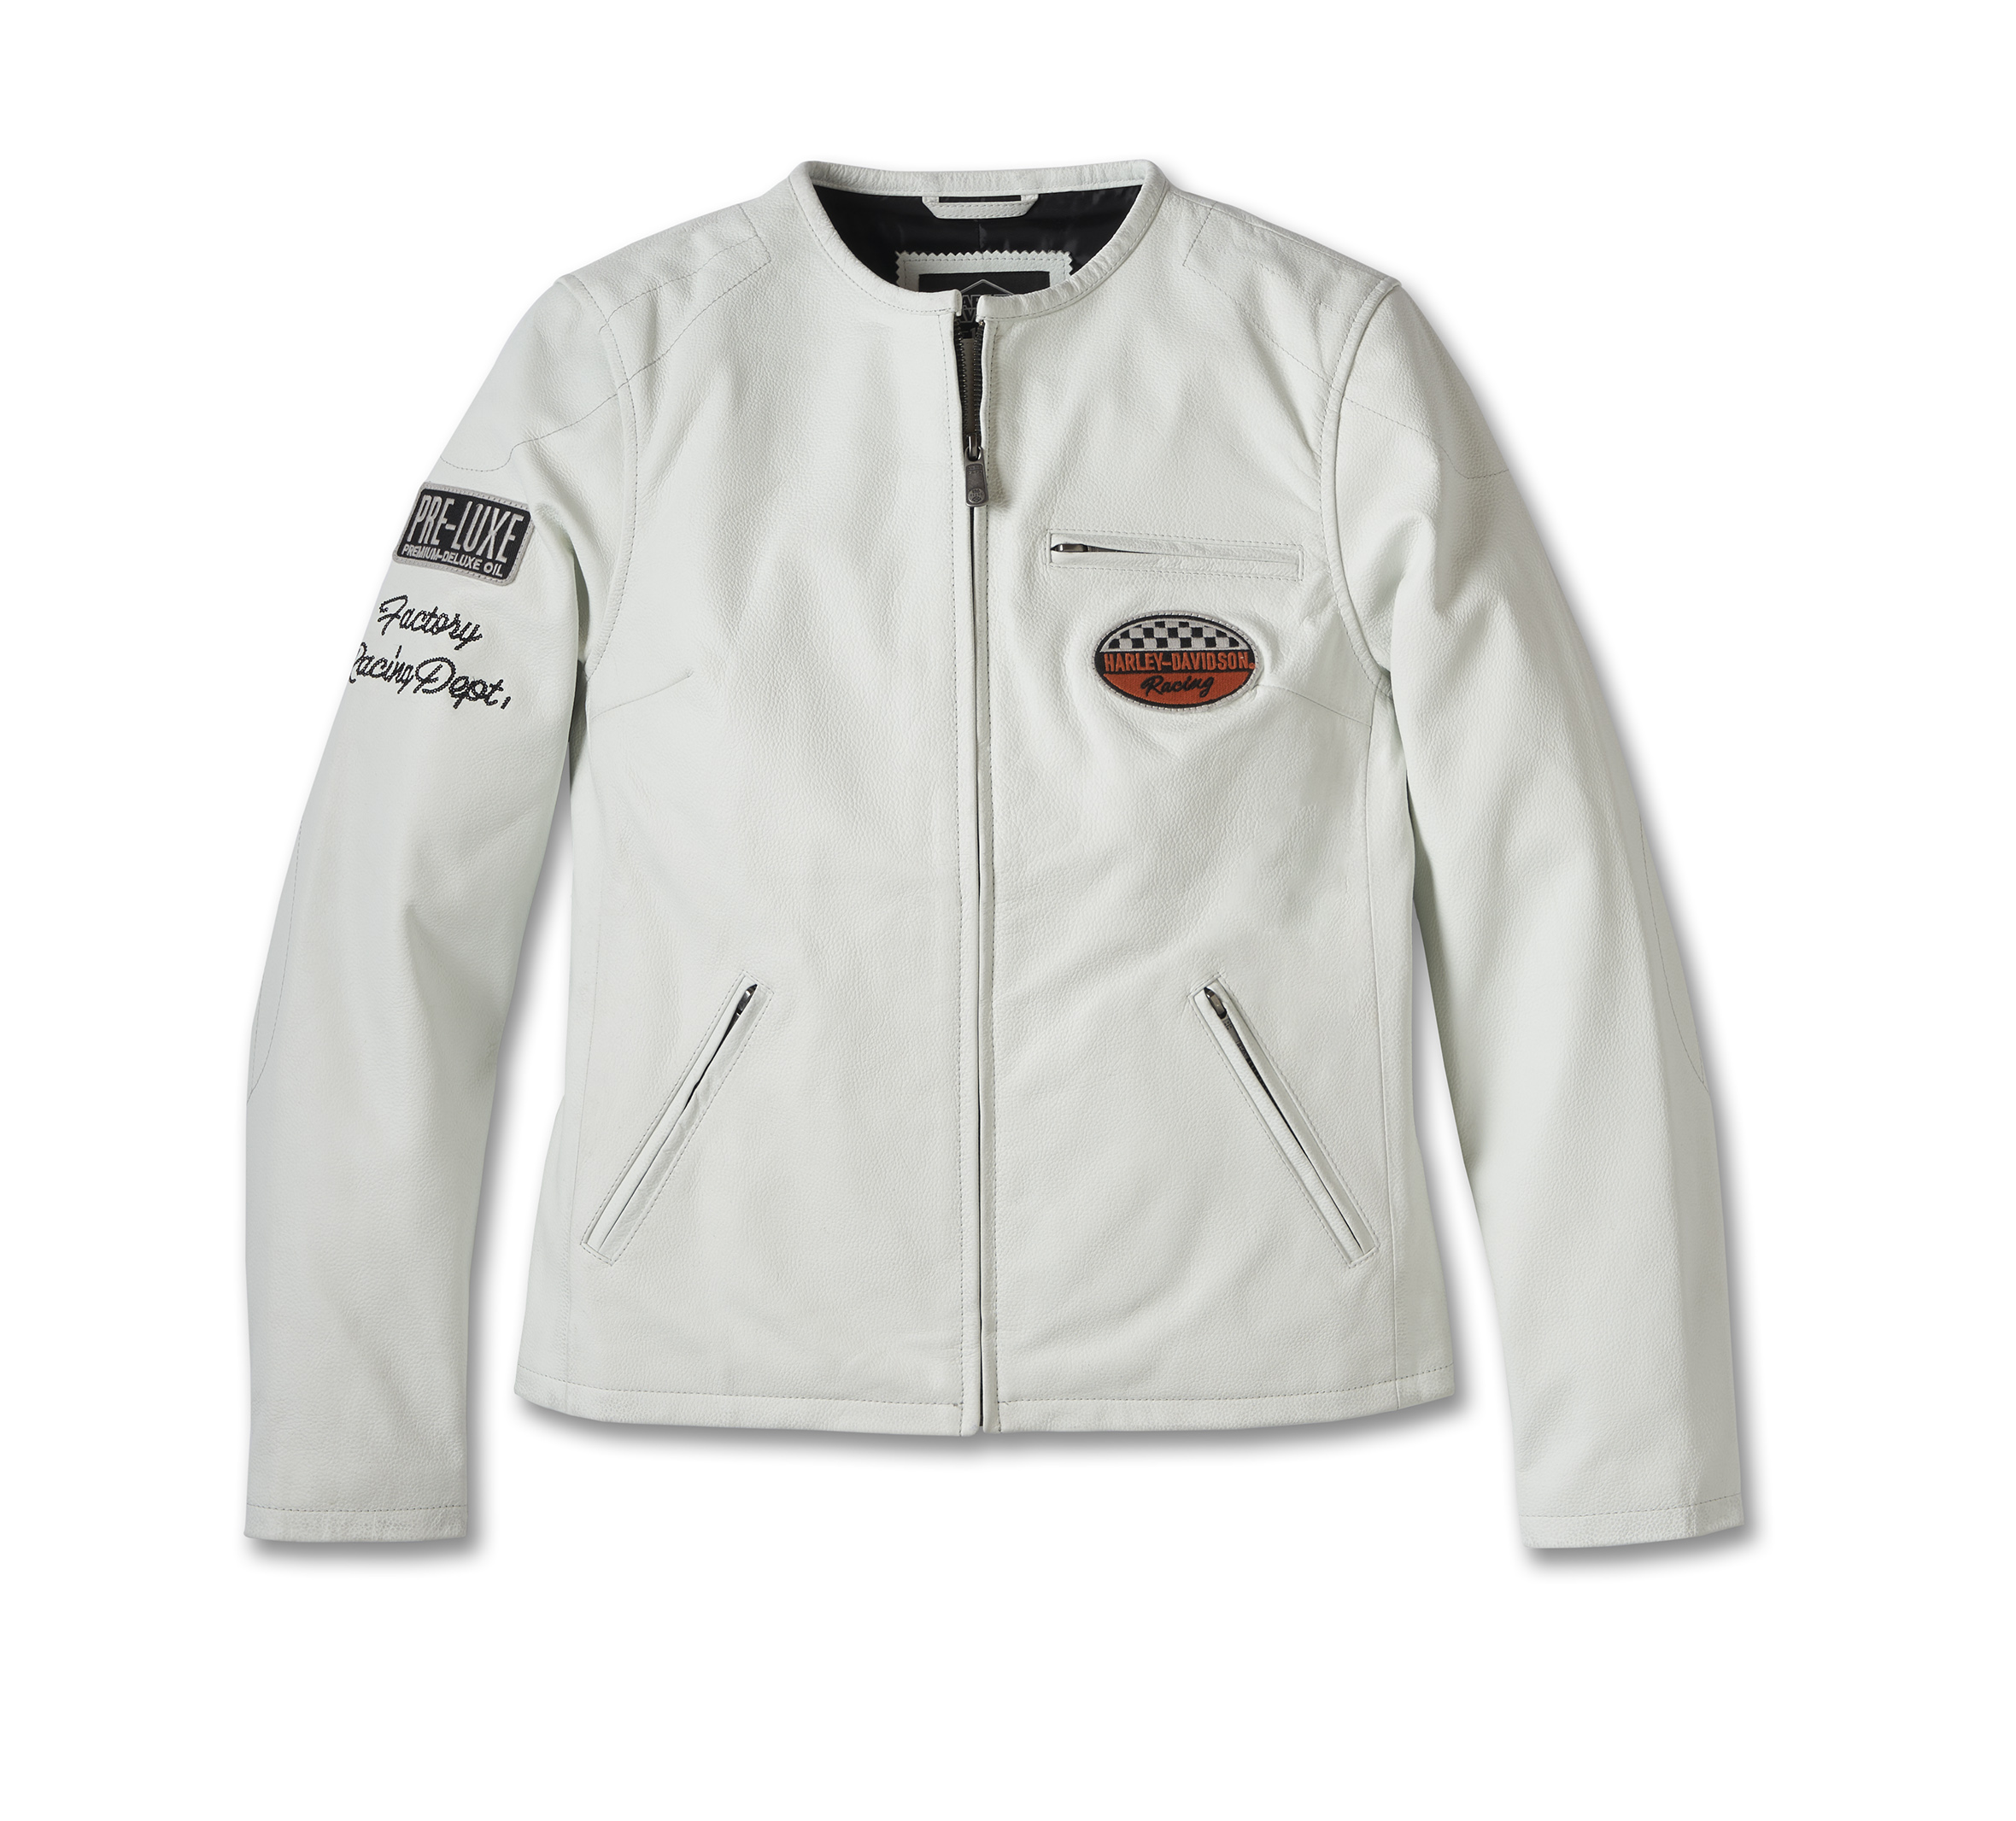  White Leather Jacket # 237